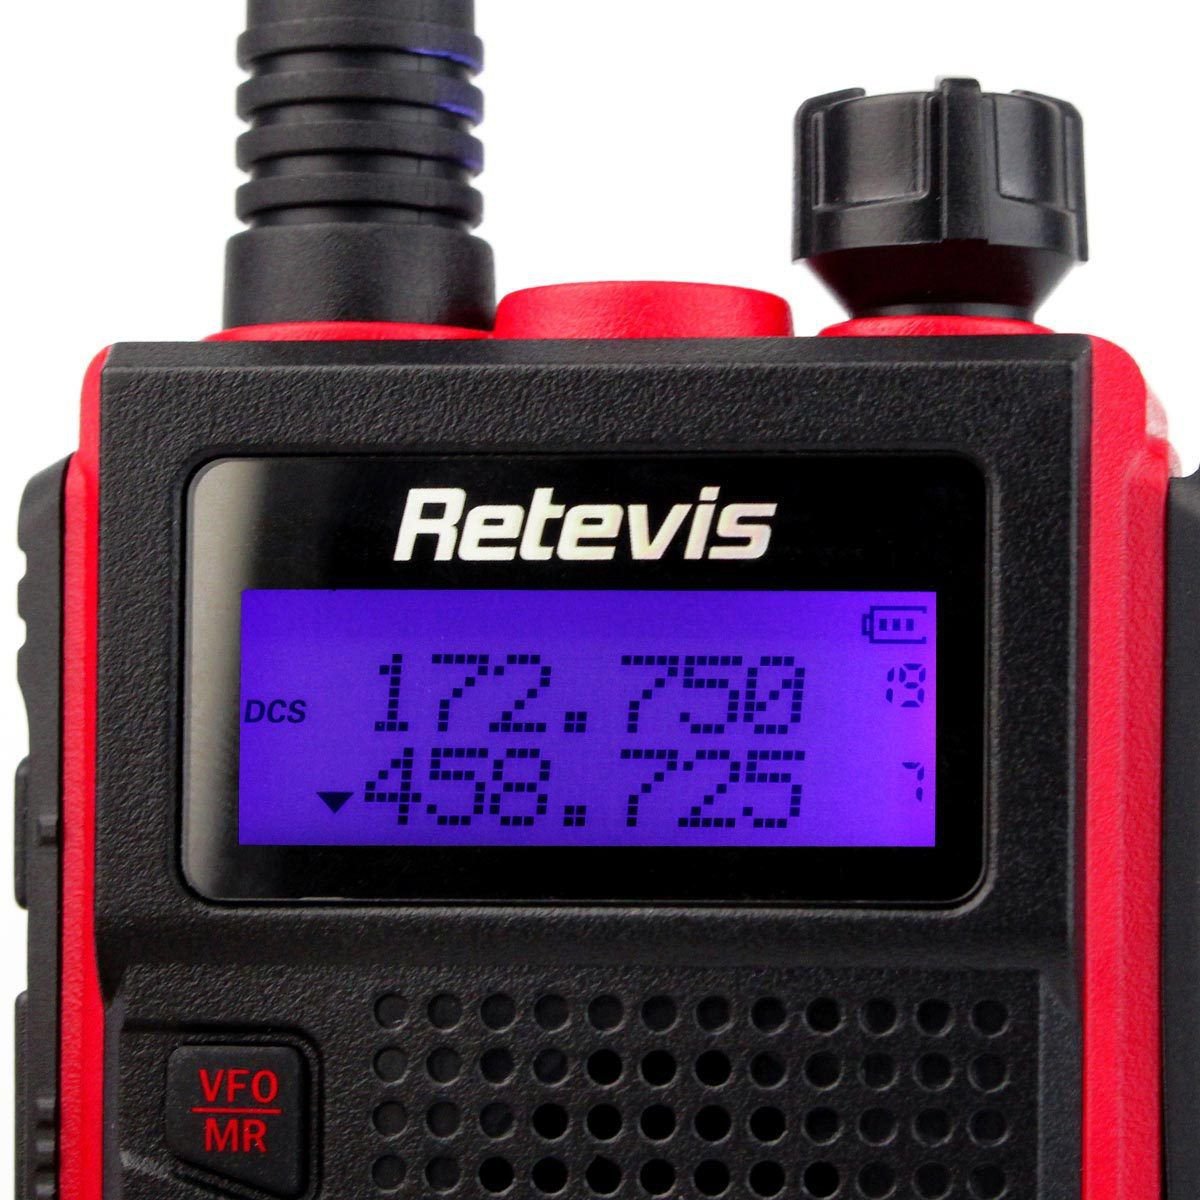 8x Retevis RT5 2-Way Radio VHF/UHF 128CH CTCSS/DCS Walkie Talkie+8x PTT ...